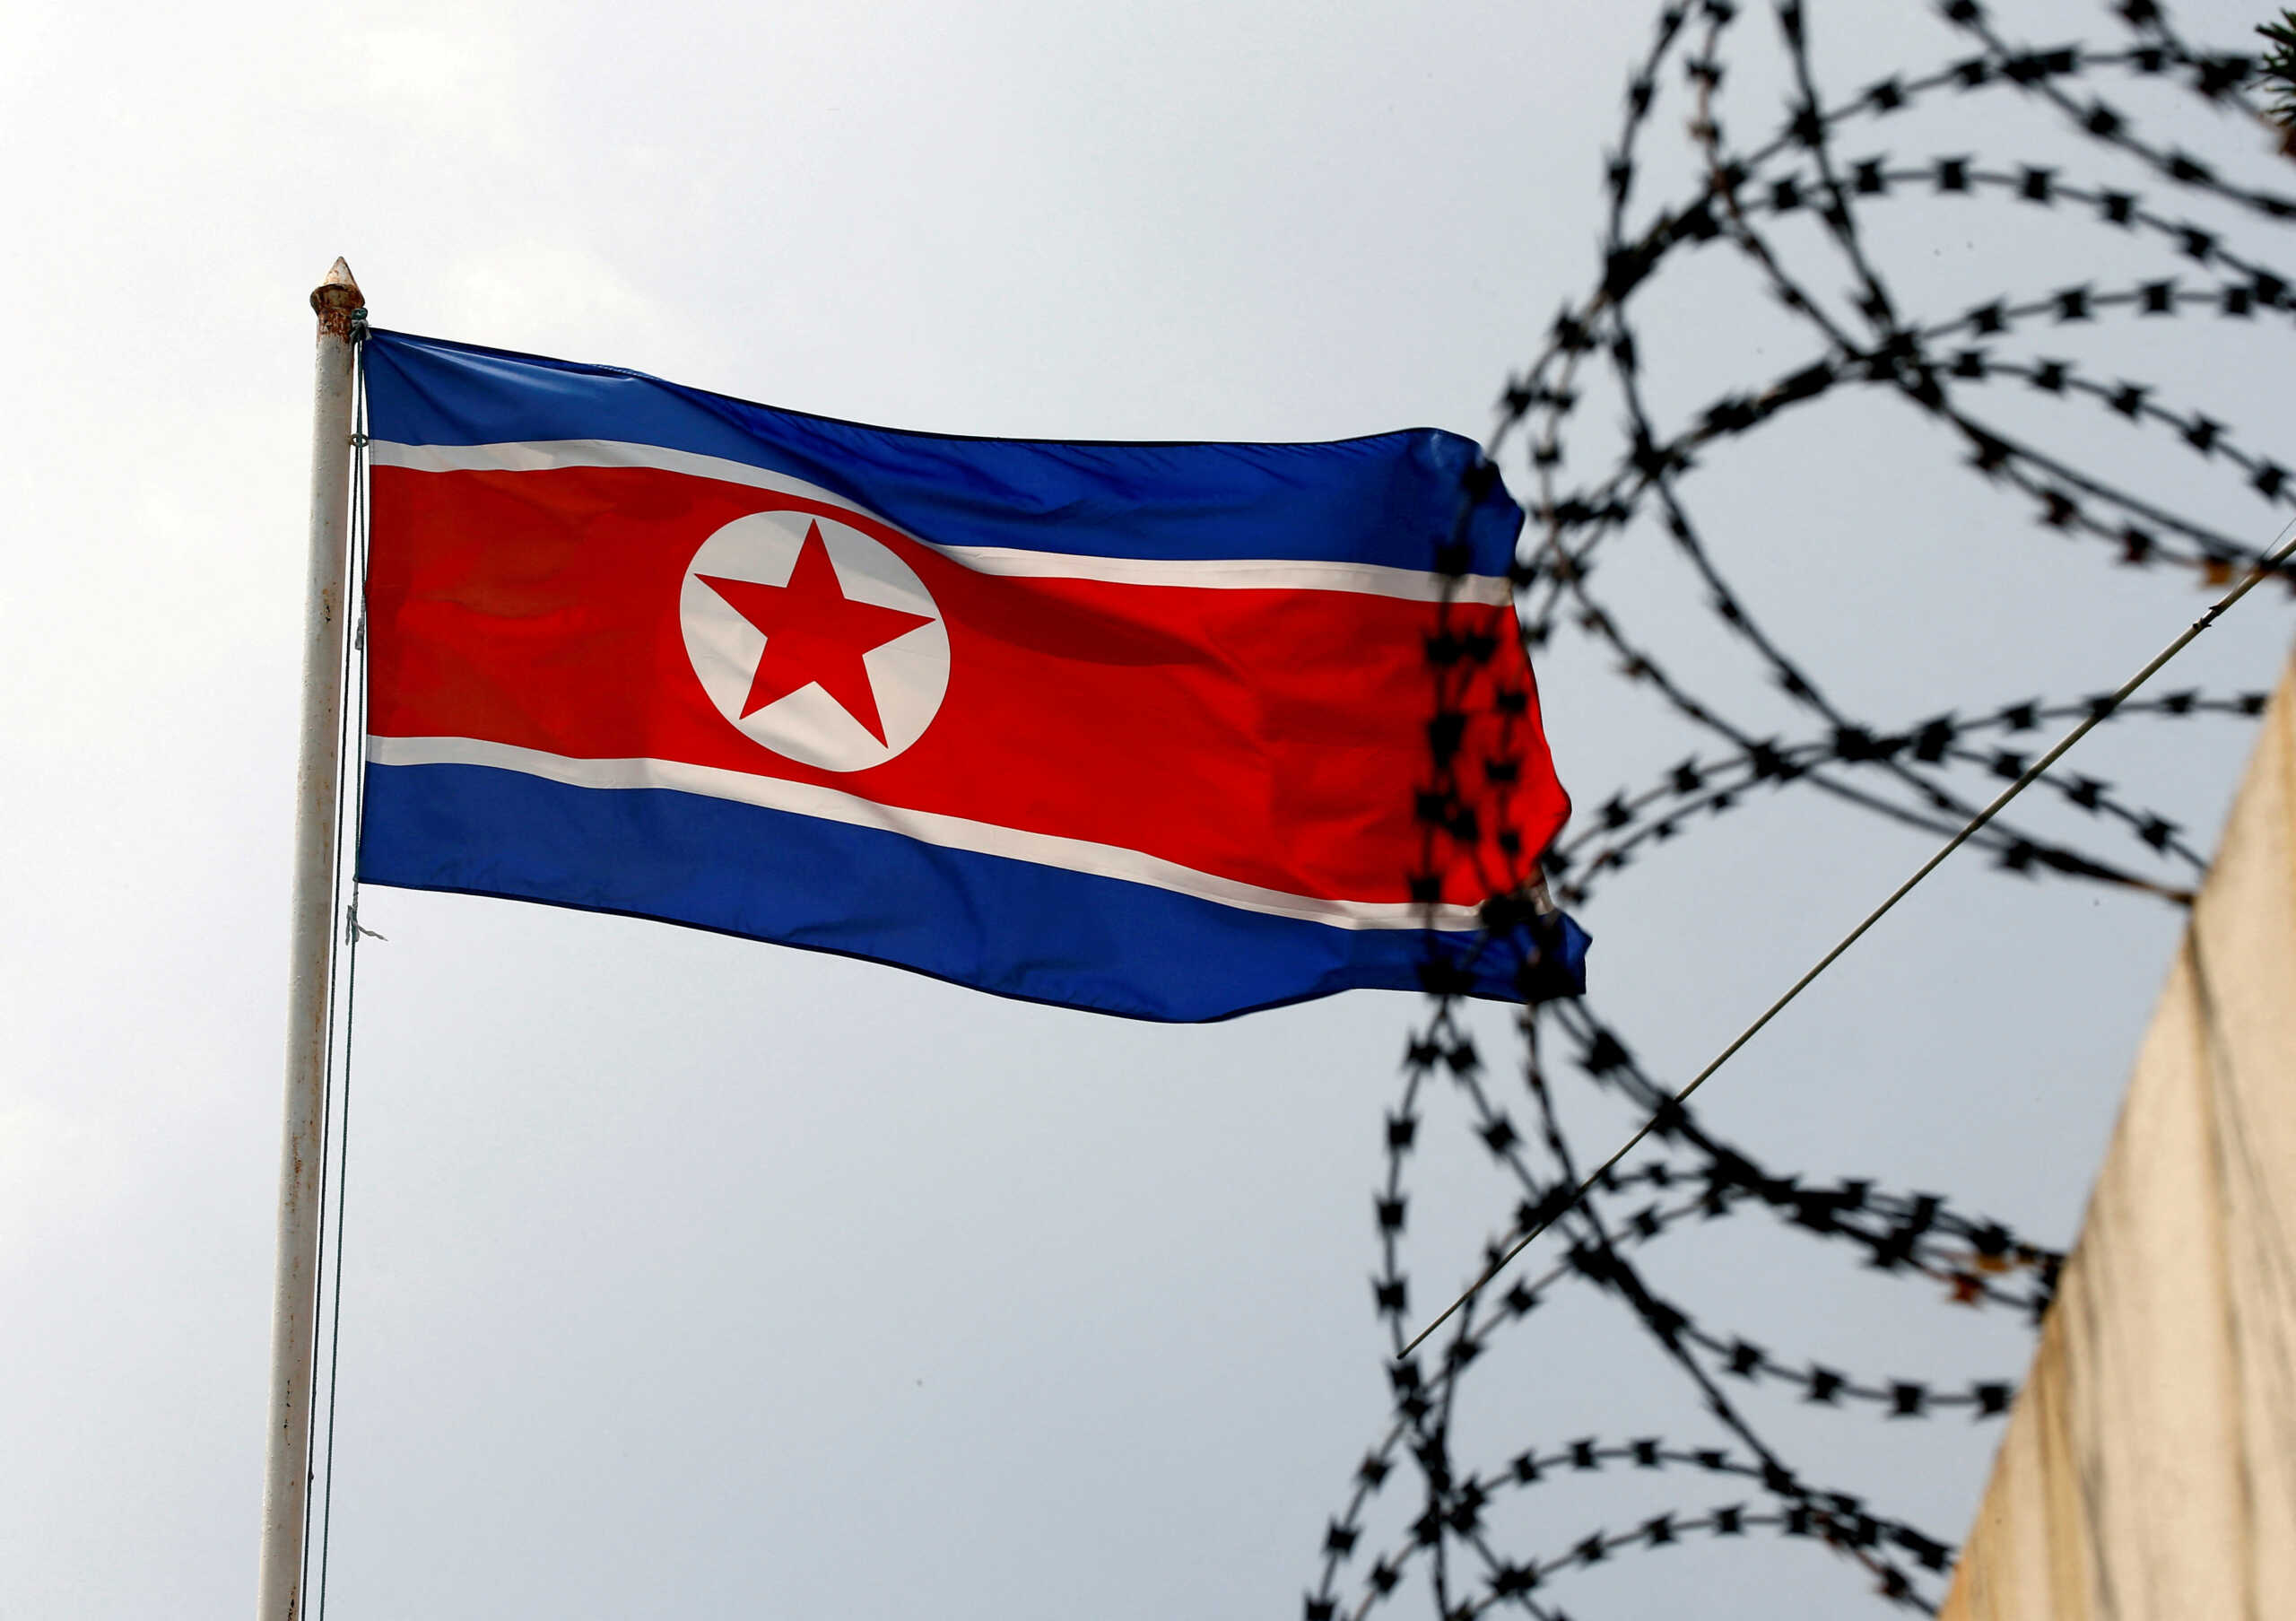 ΗΠΑ: Πάτησε αμερικανικό έδαφος ο στρατιώτης που ήταν 2 μήνες κρατούμενος στην Βόρεια Κορέα